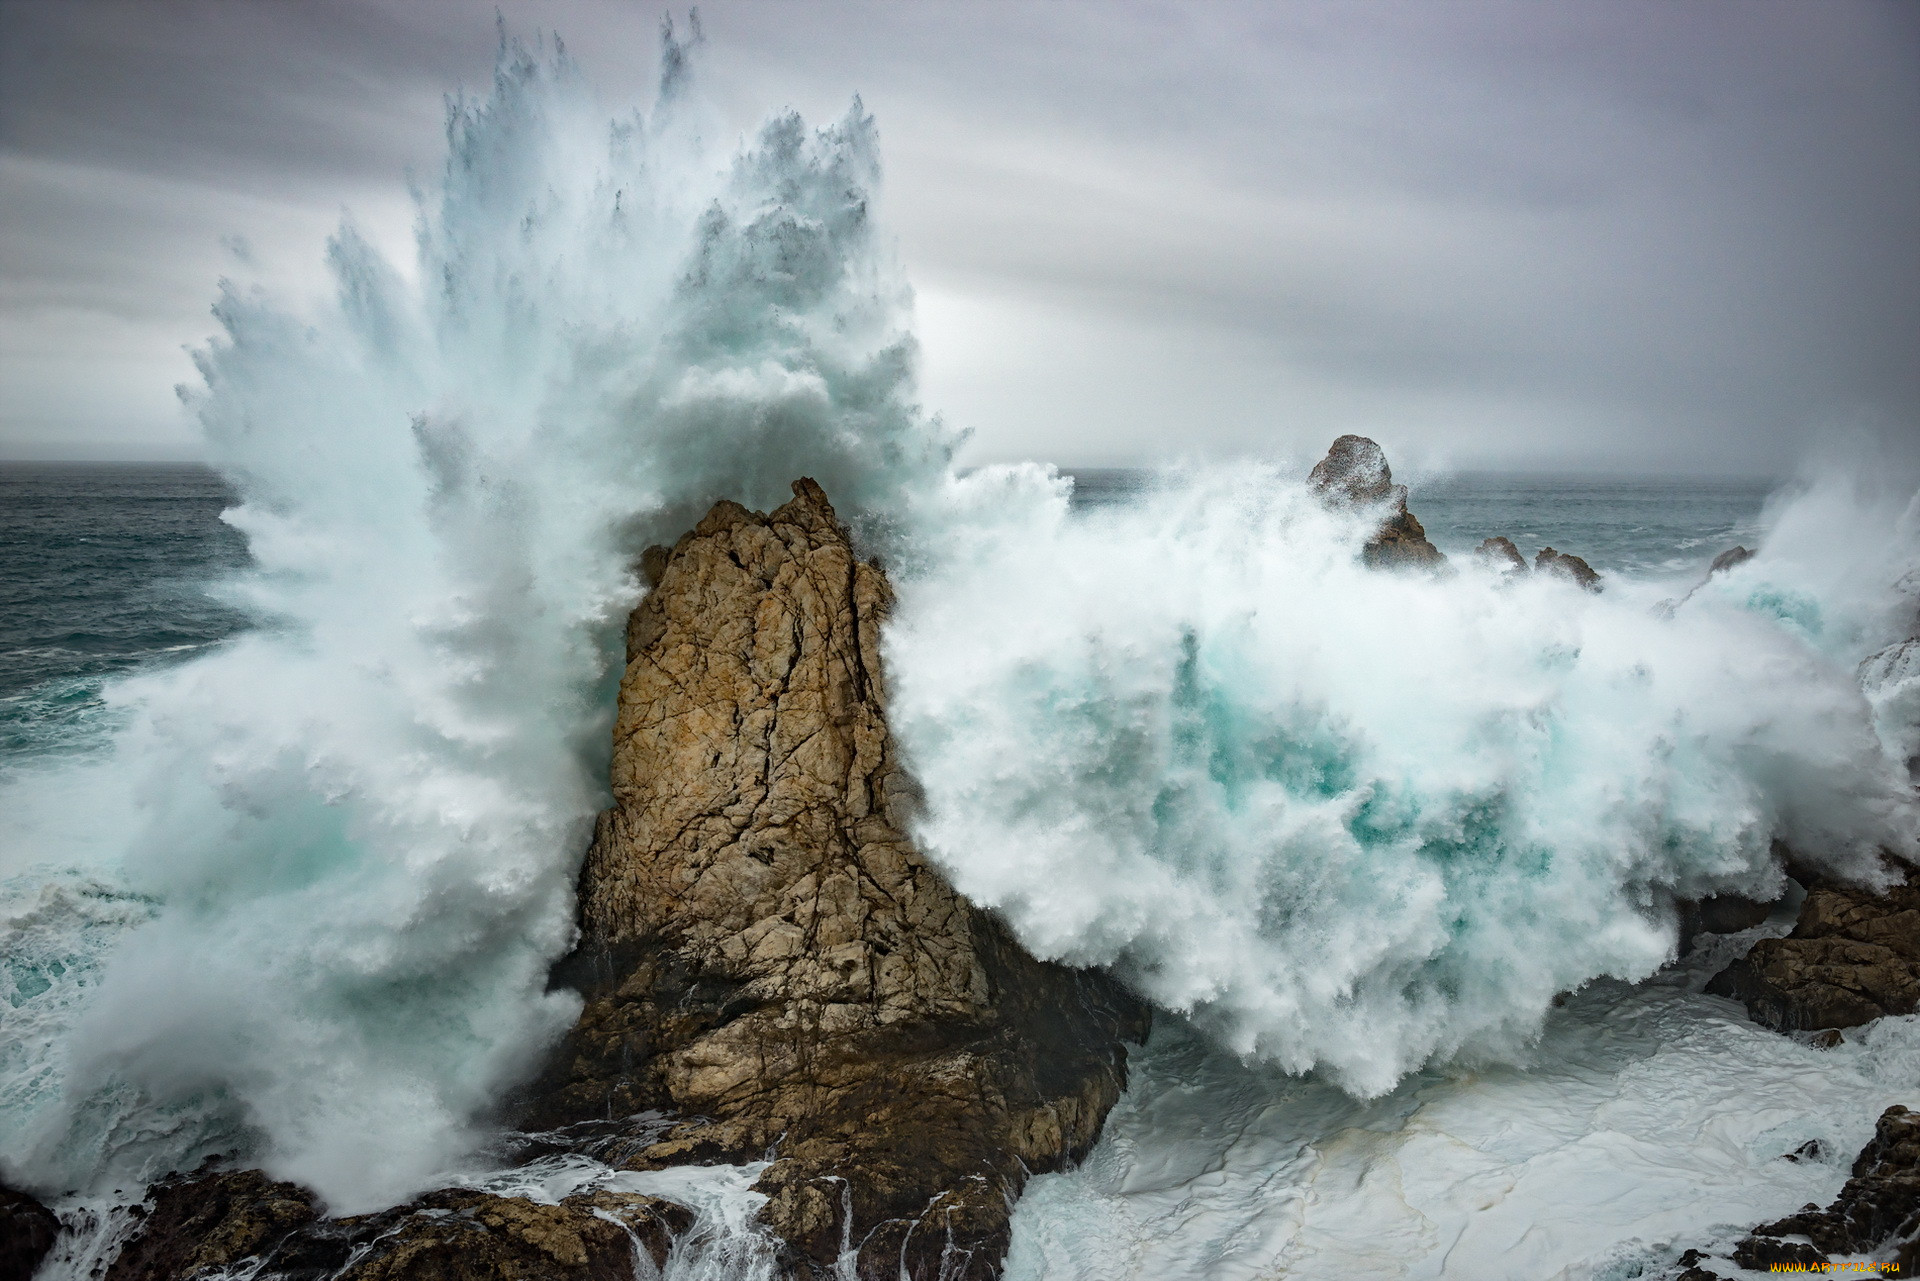 Вода ветер пыль. Море Утес шторм. Волны разбиваются о скалы. Бушующее море. Стихии природы.